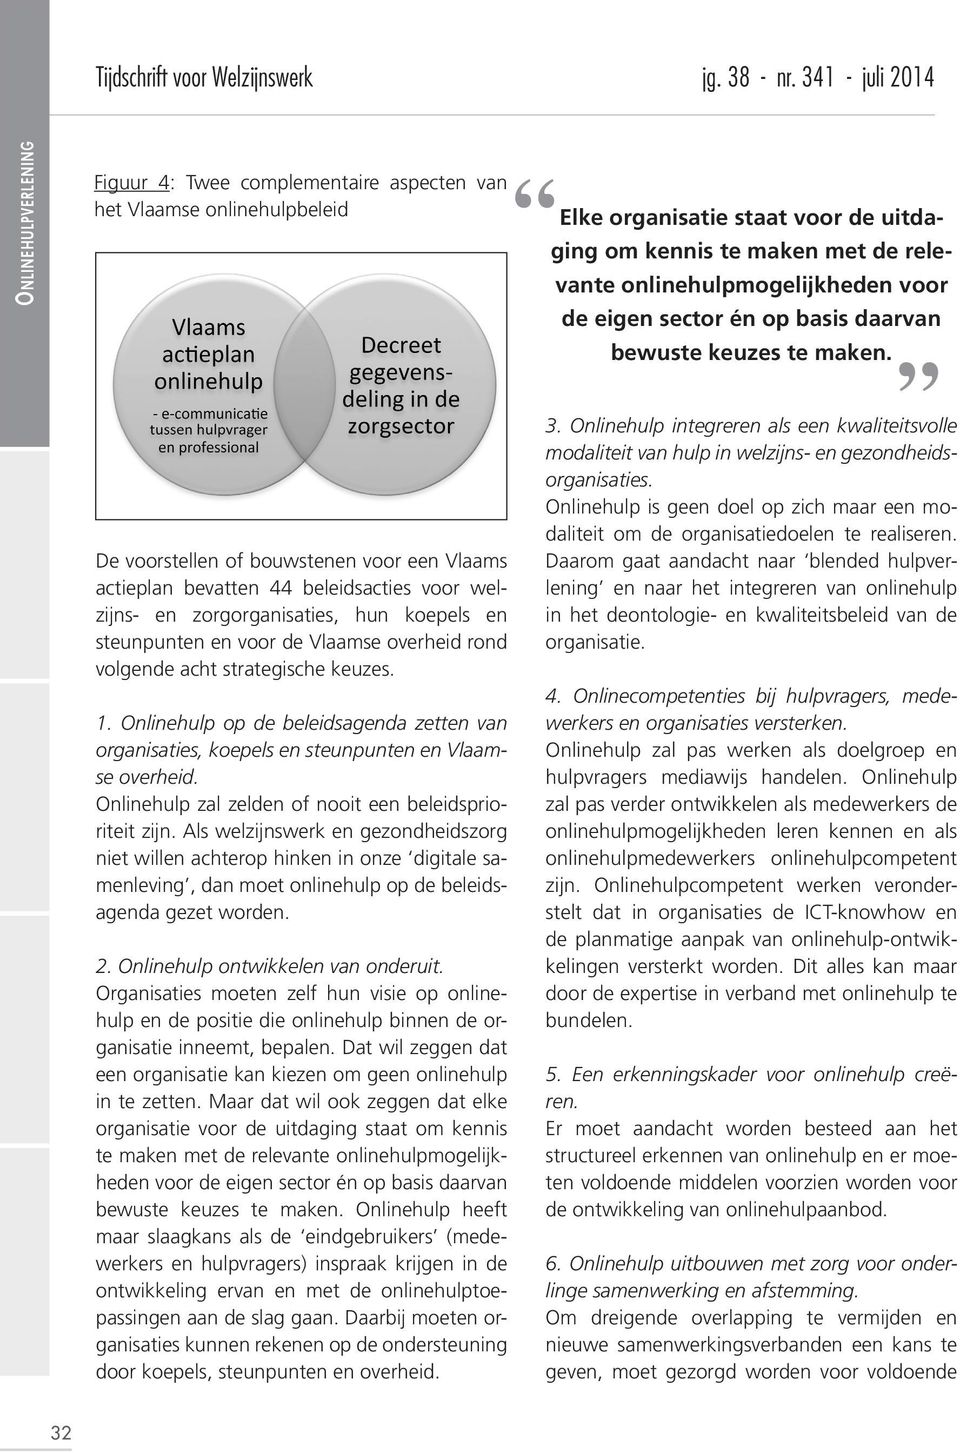 De voorstellen of bouwstenen voor een Vlaams actieplan bevatten 44 beleidsacties voor welzijns- en zorgorganisaties, hun koepels en steunpunten en voor de Vlaamse overheid rond volgende acht